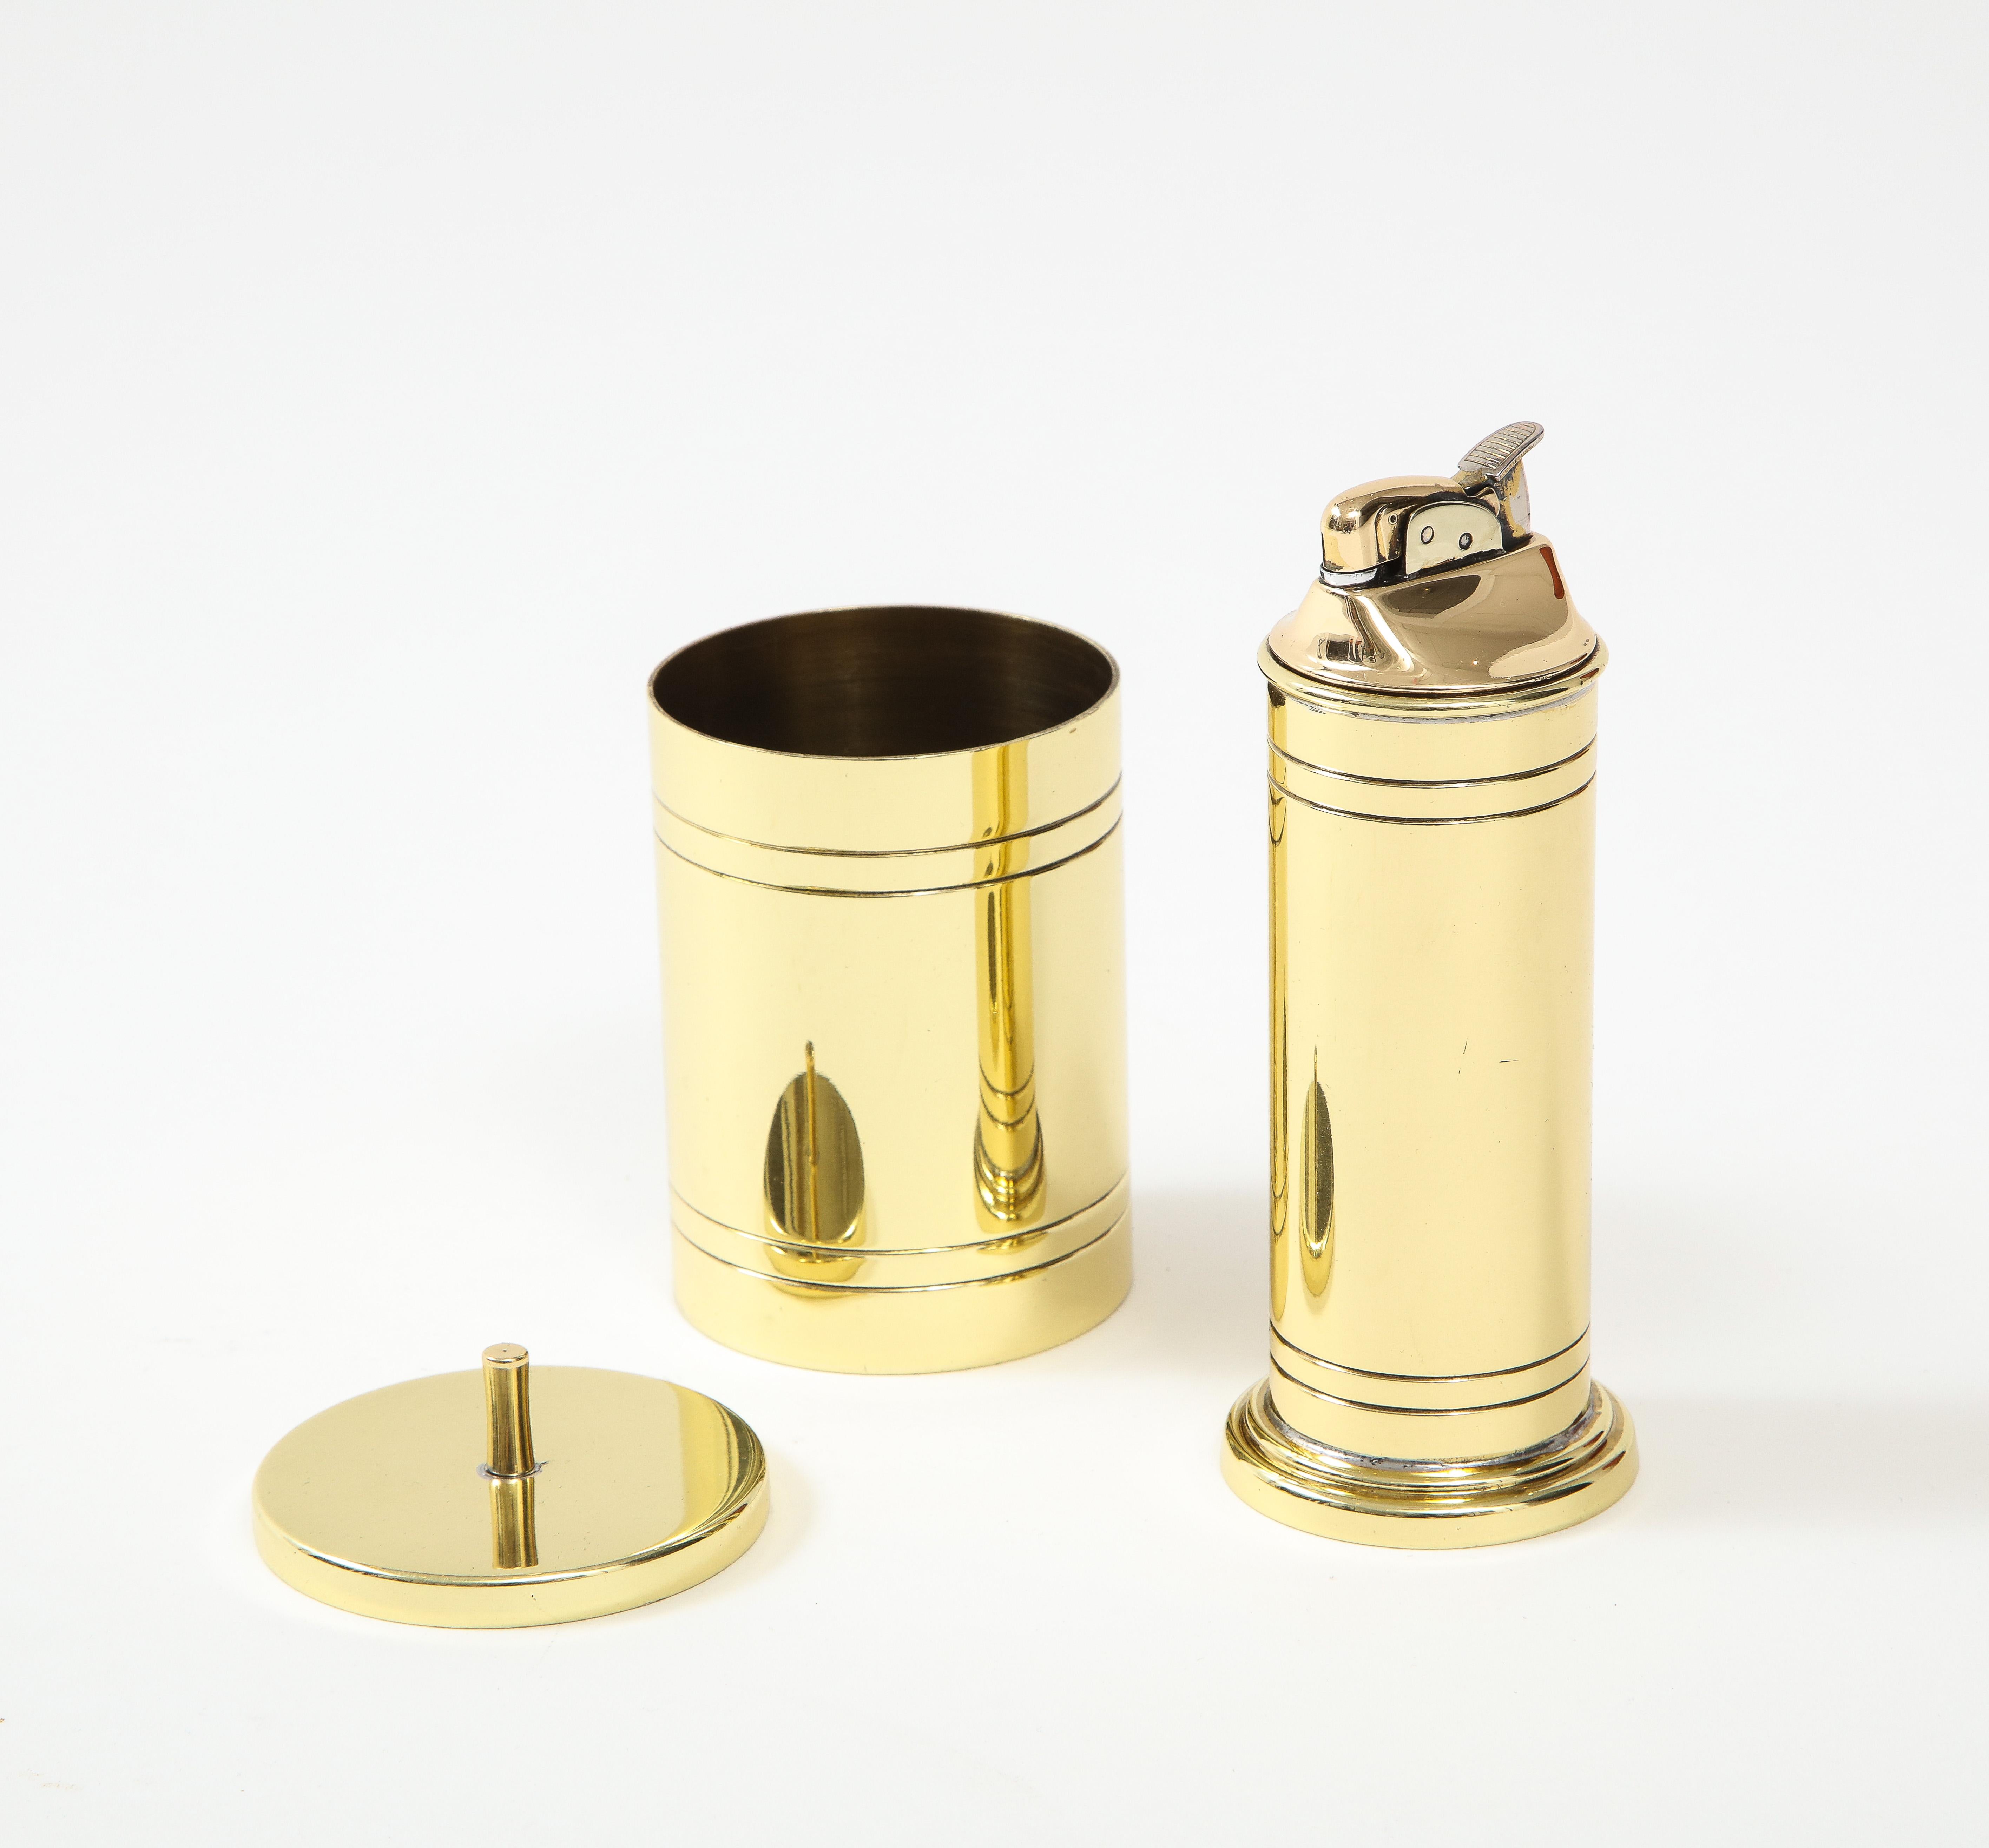 Hollywood Regency Tommi Parzinger Brass Smoking Set For Sale